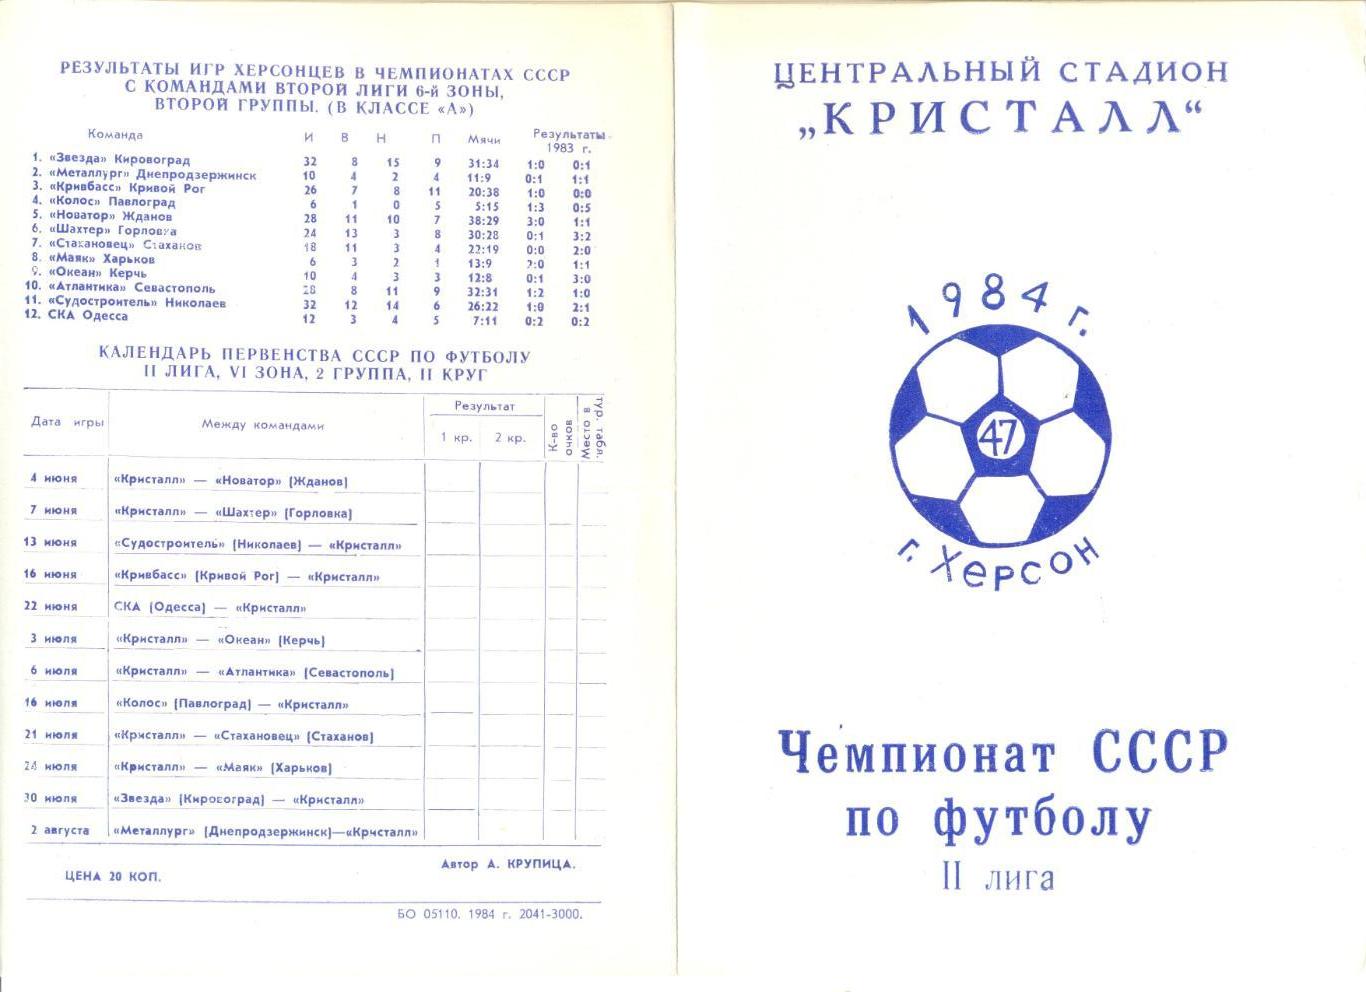 Буклет Кристалл Херсон - 1984 г. История, фото команды,статистика выступлений.